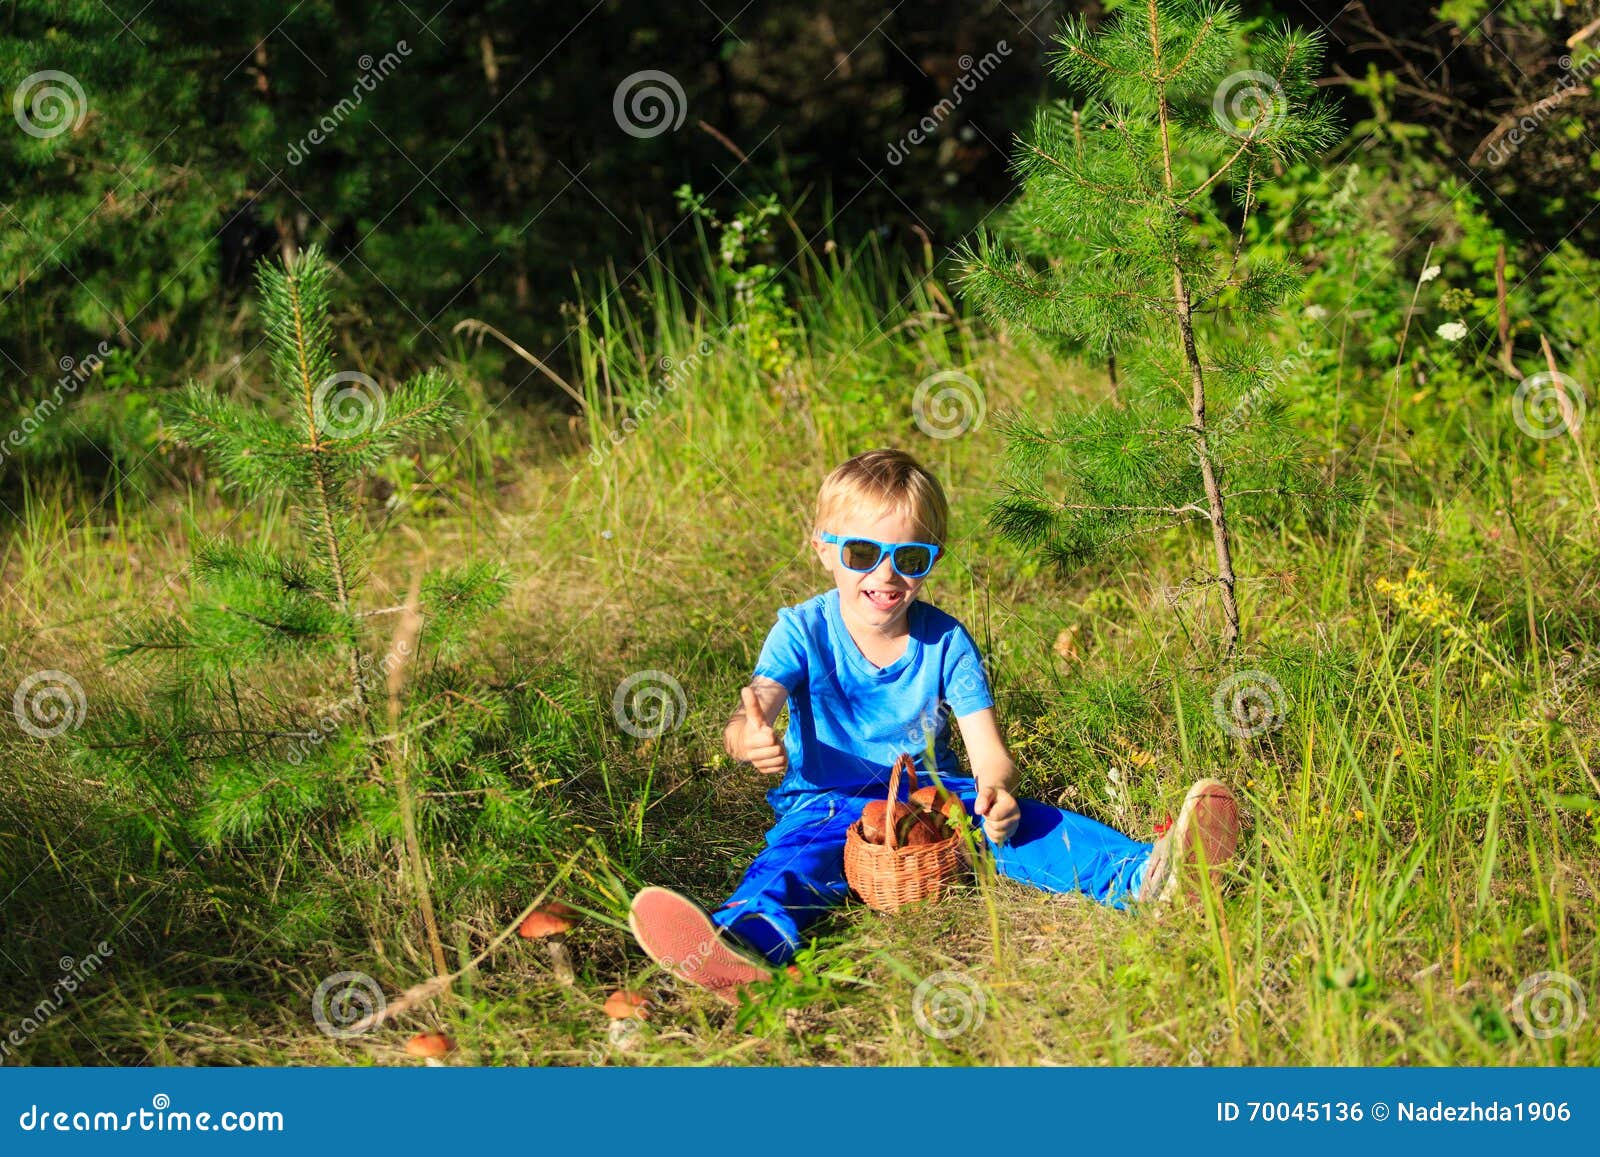 Оставила детей в лесу. Дети в лесу собирают. Грибок Лесной детский. Осмотр одежды в лесу детей. Рисунок мальчики в лесу собирают грибы.